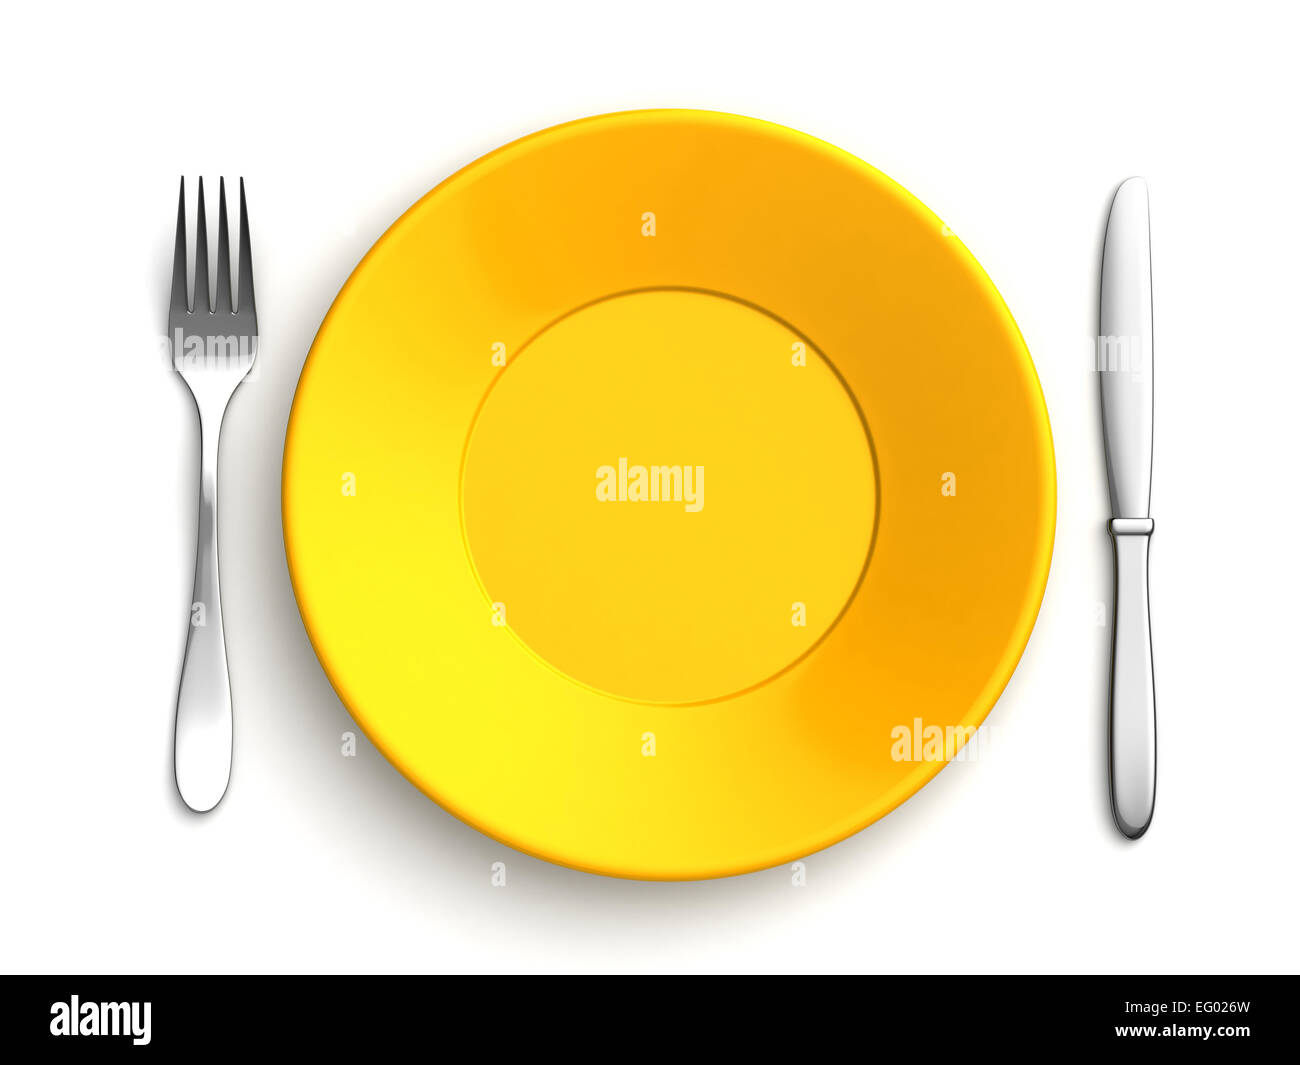 Le rendu 3D de couteaux, fourchettes et plaque jaune sur fond blanc Banque D'Images